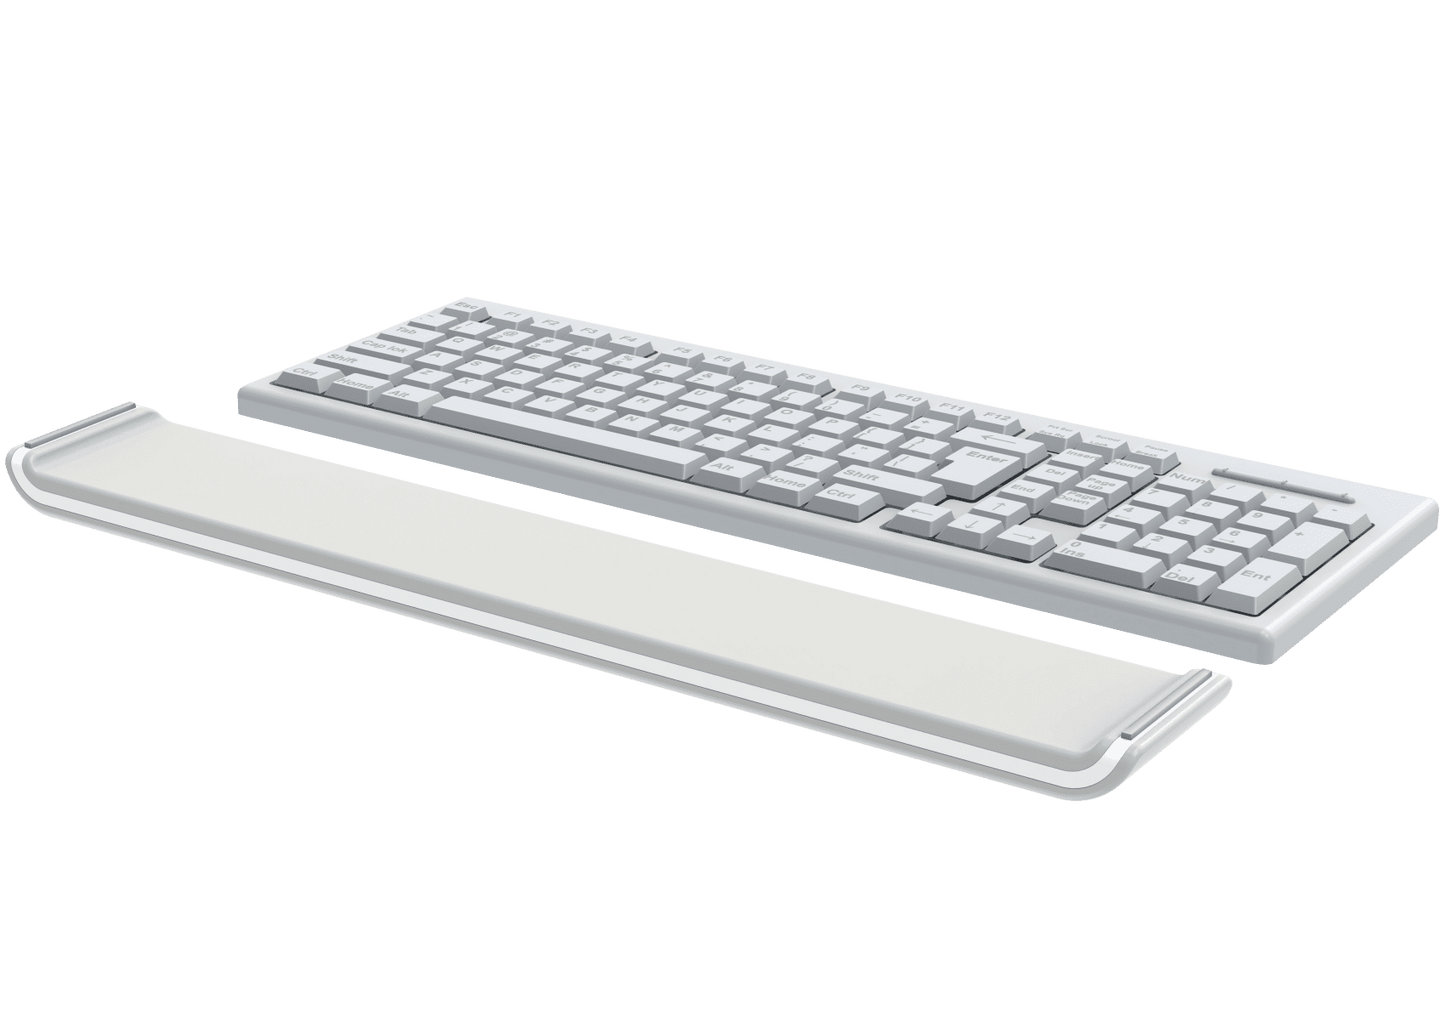 Leitz Acco Brands Ergo Cosy Verstellbare Handgelenkauflage für Tastaturen - Bürowelten.eu